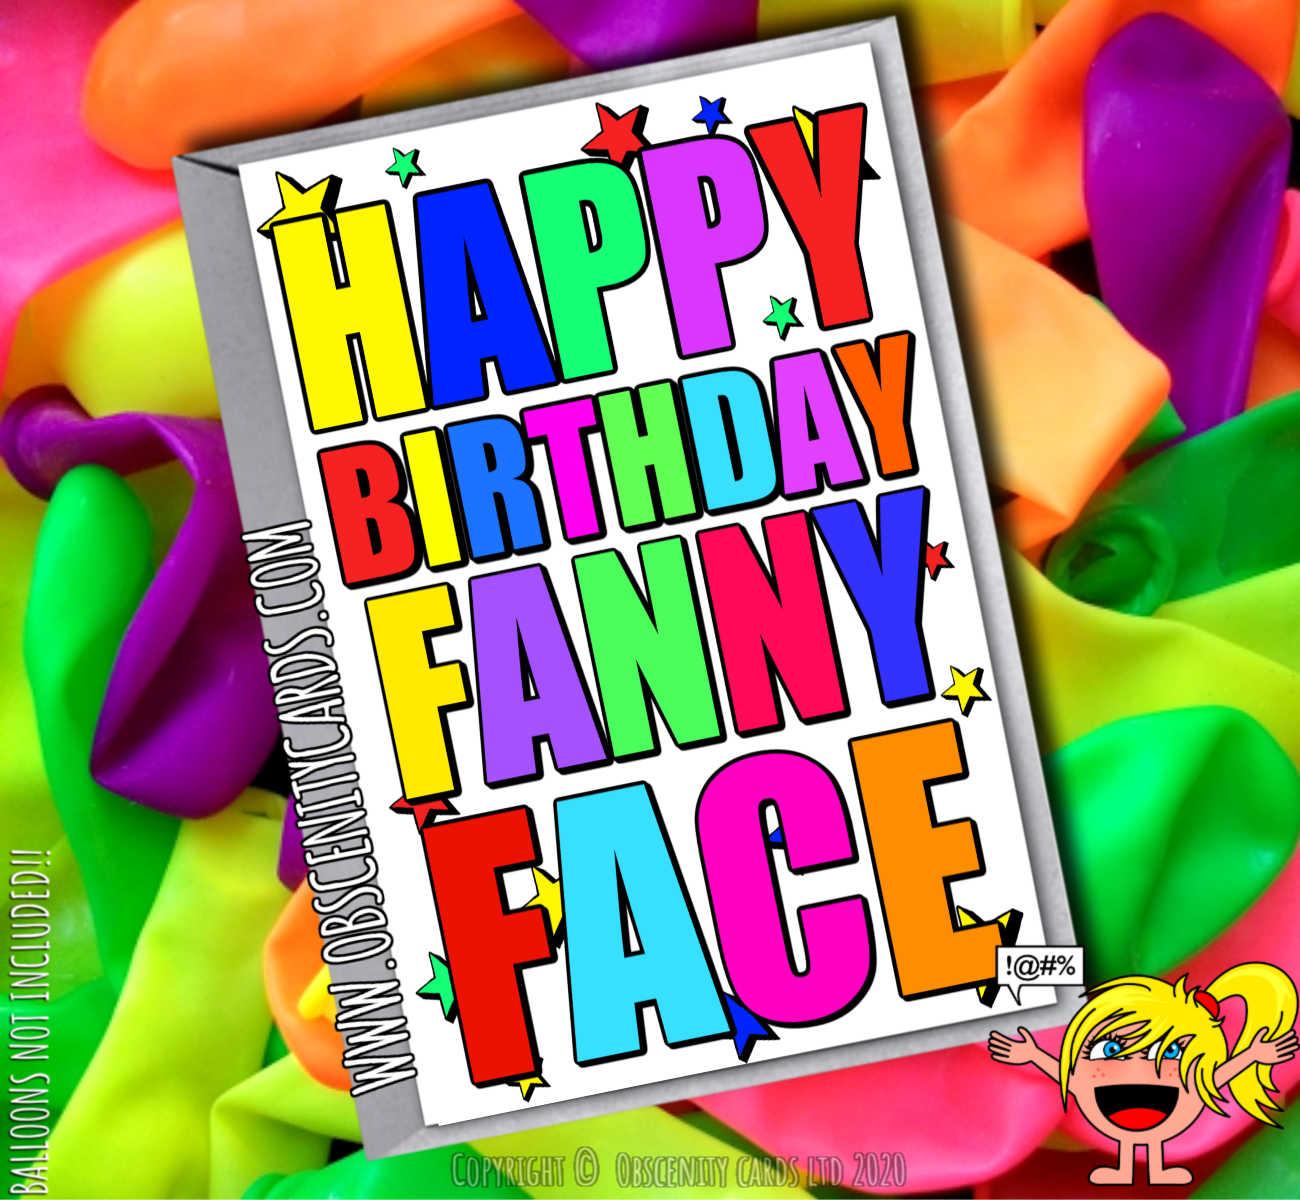 HAPPY BIRTHDAY FANNY FACE FUNNY CARD